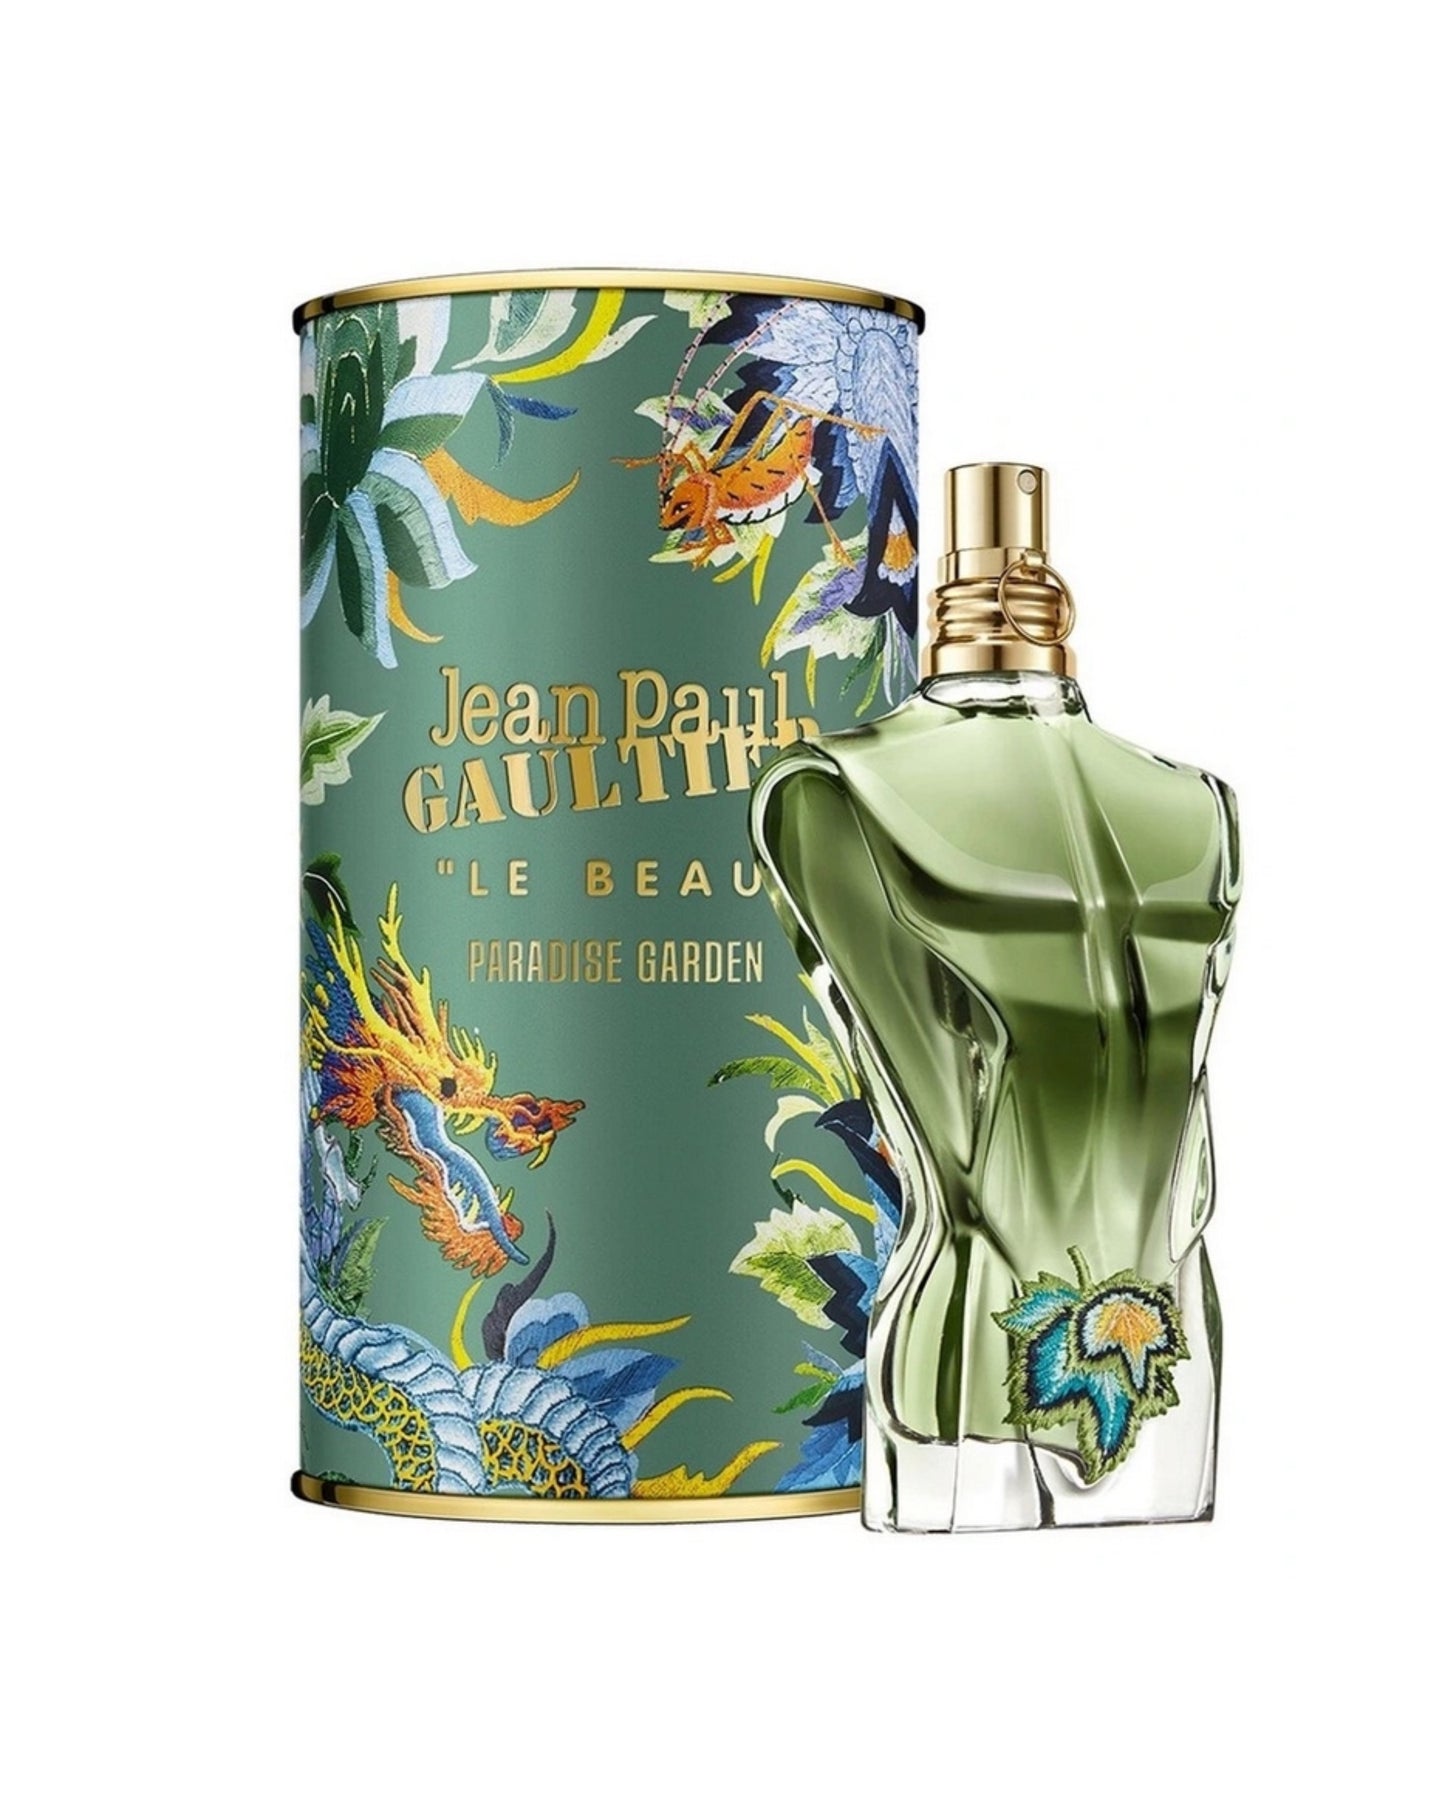 LE BEAU PARADISE GARDEN - JEAN PAUL GAUTIER Eau De Parfum